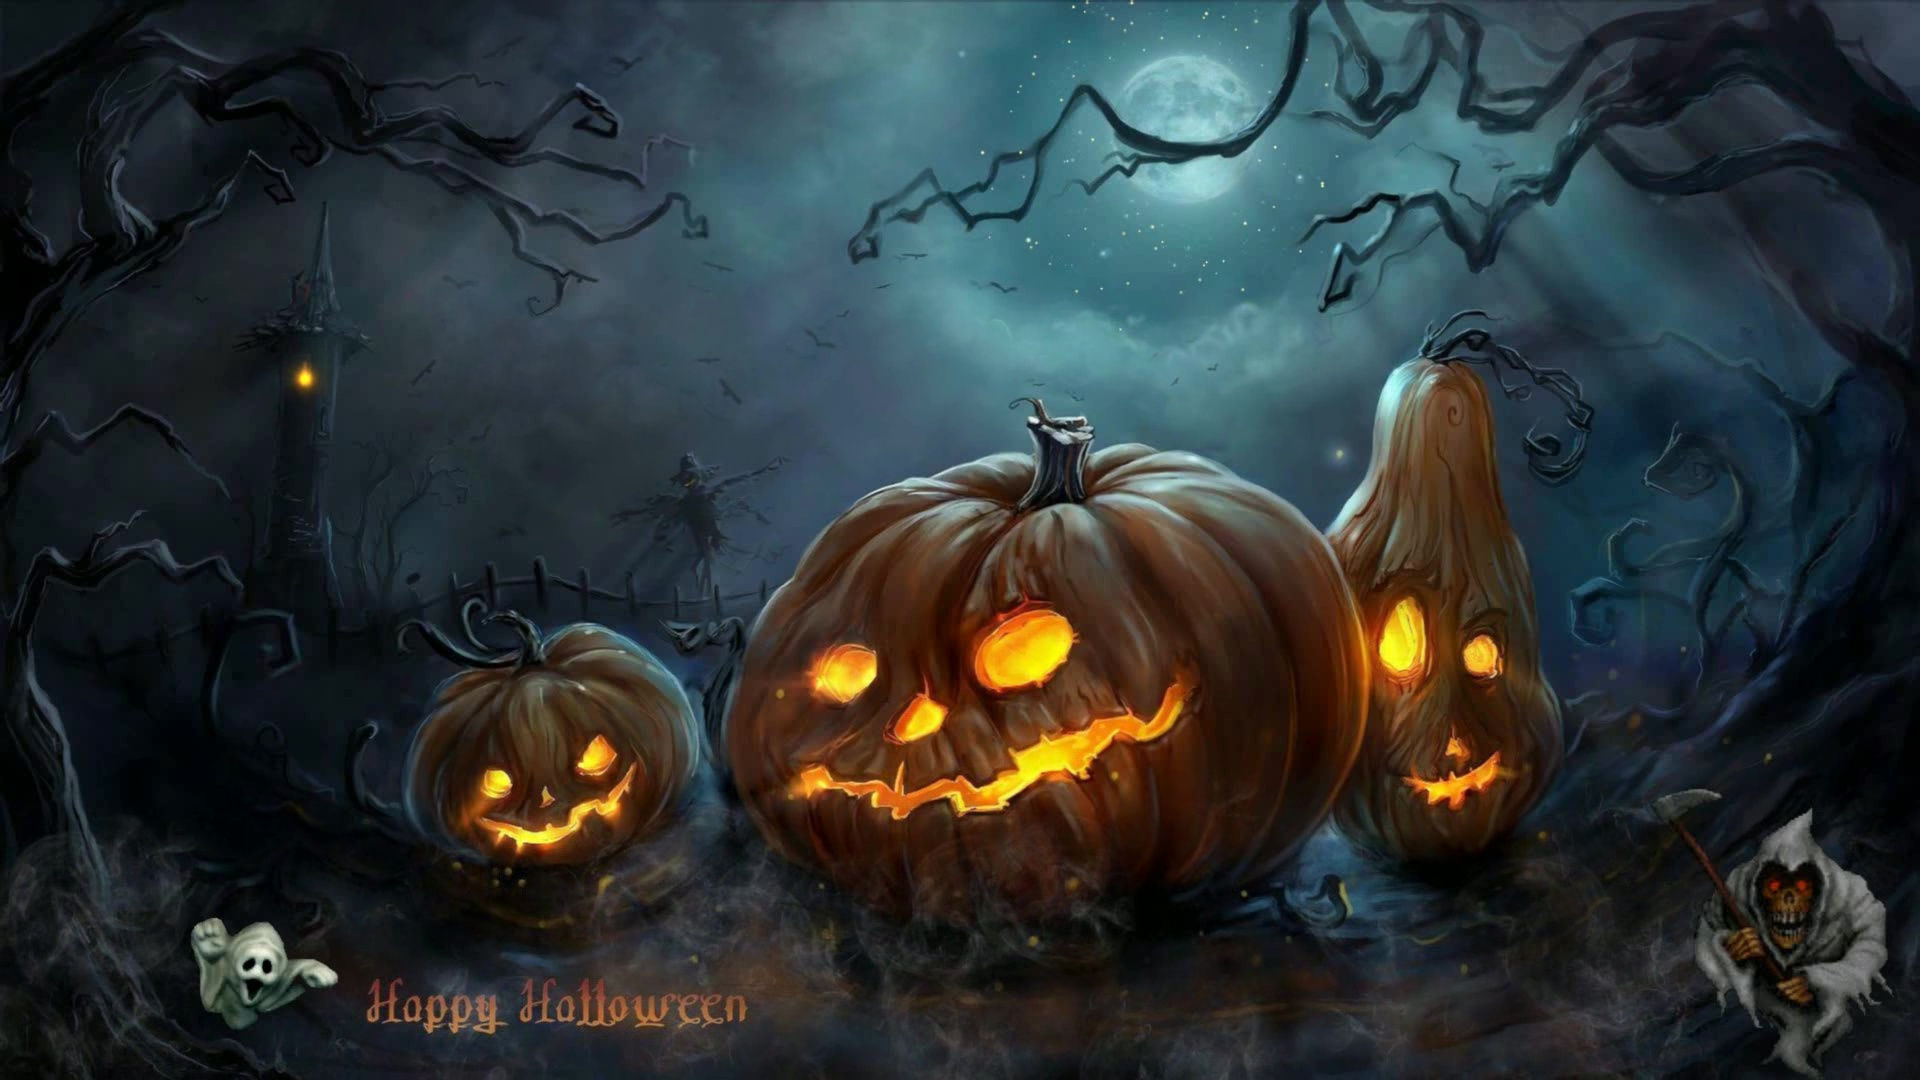 Happy Halloween! Is your Desktop Spooky Yet?